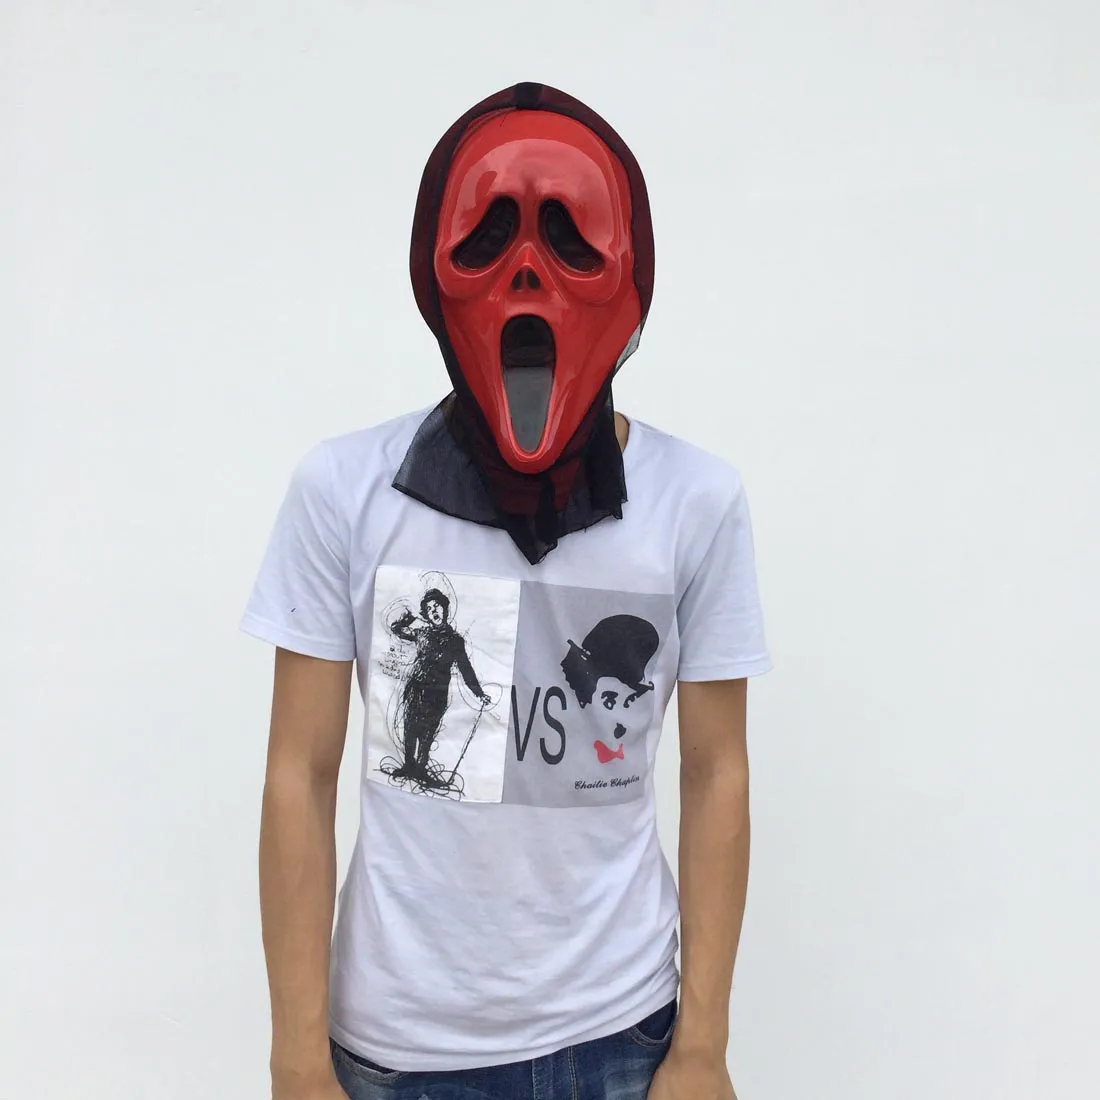 En vente masque fantôme rouge avec glauze noire masque complet de fête d'Halloween Costume de diable effrayant couleur rouge livraison gratuite